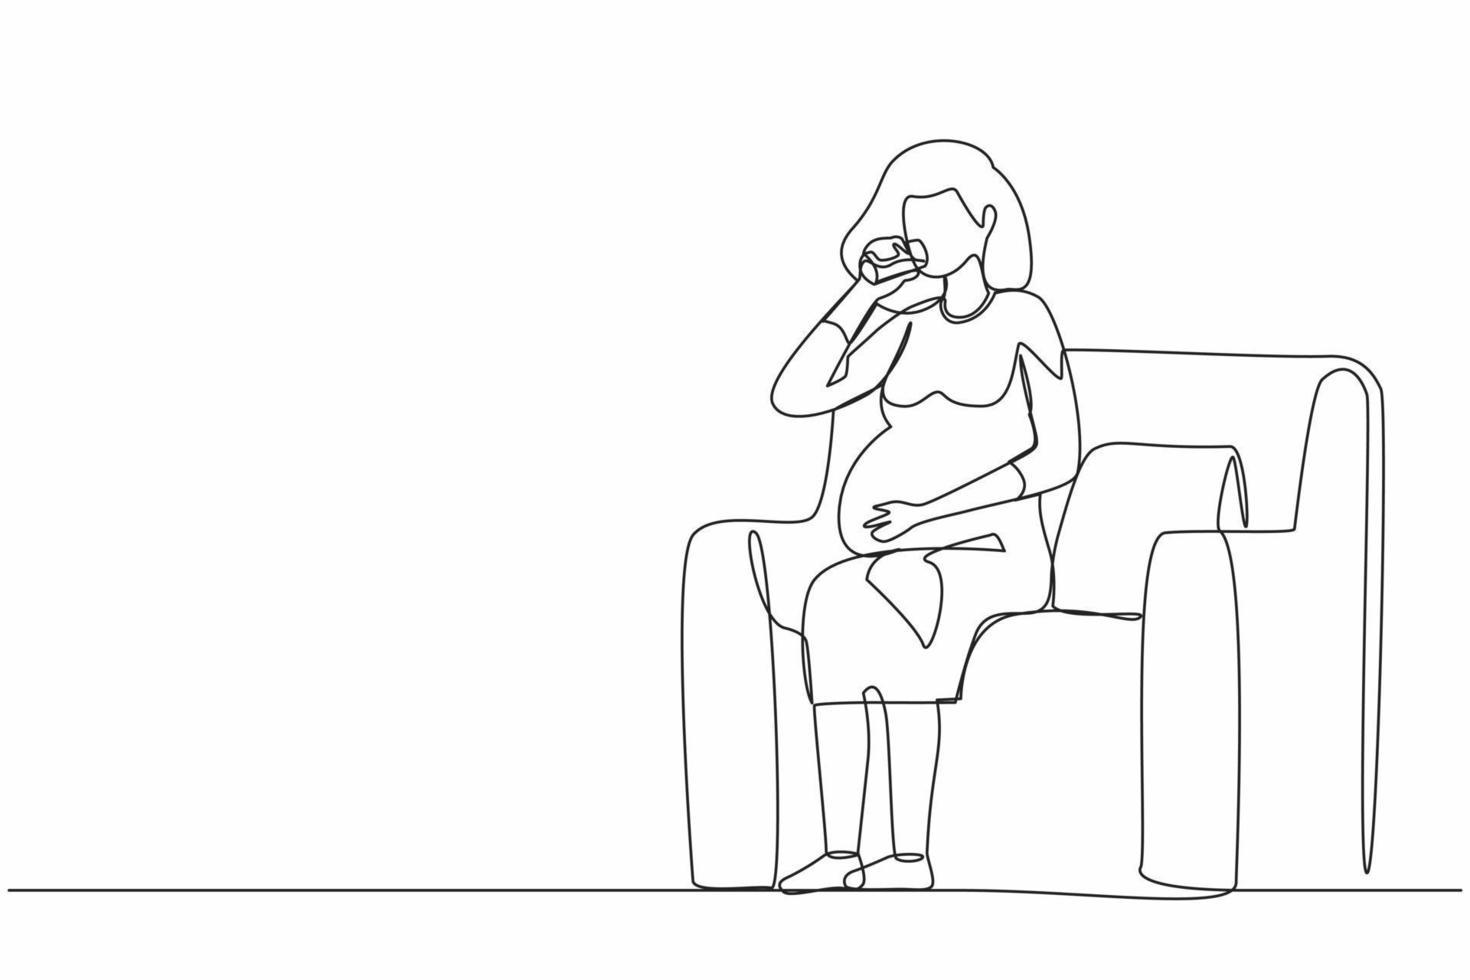 disegno a linea continua singola donna incinta acqua potabile seduta sul divano. la donna in attesa riposa a casa con il vetro. gravidanza, assistenza sanitaria, concetto di sete. vettore grafico di disegno di una linea